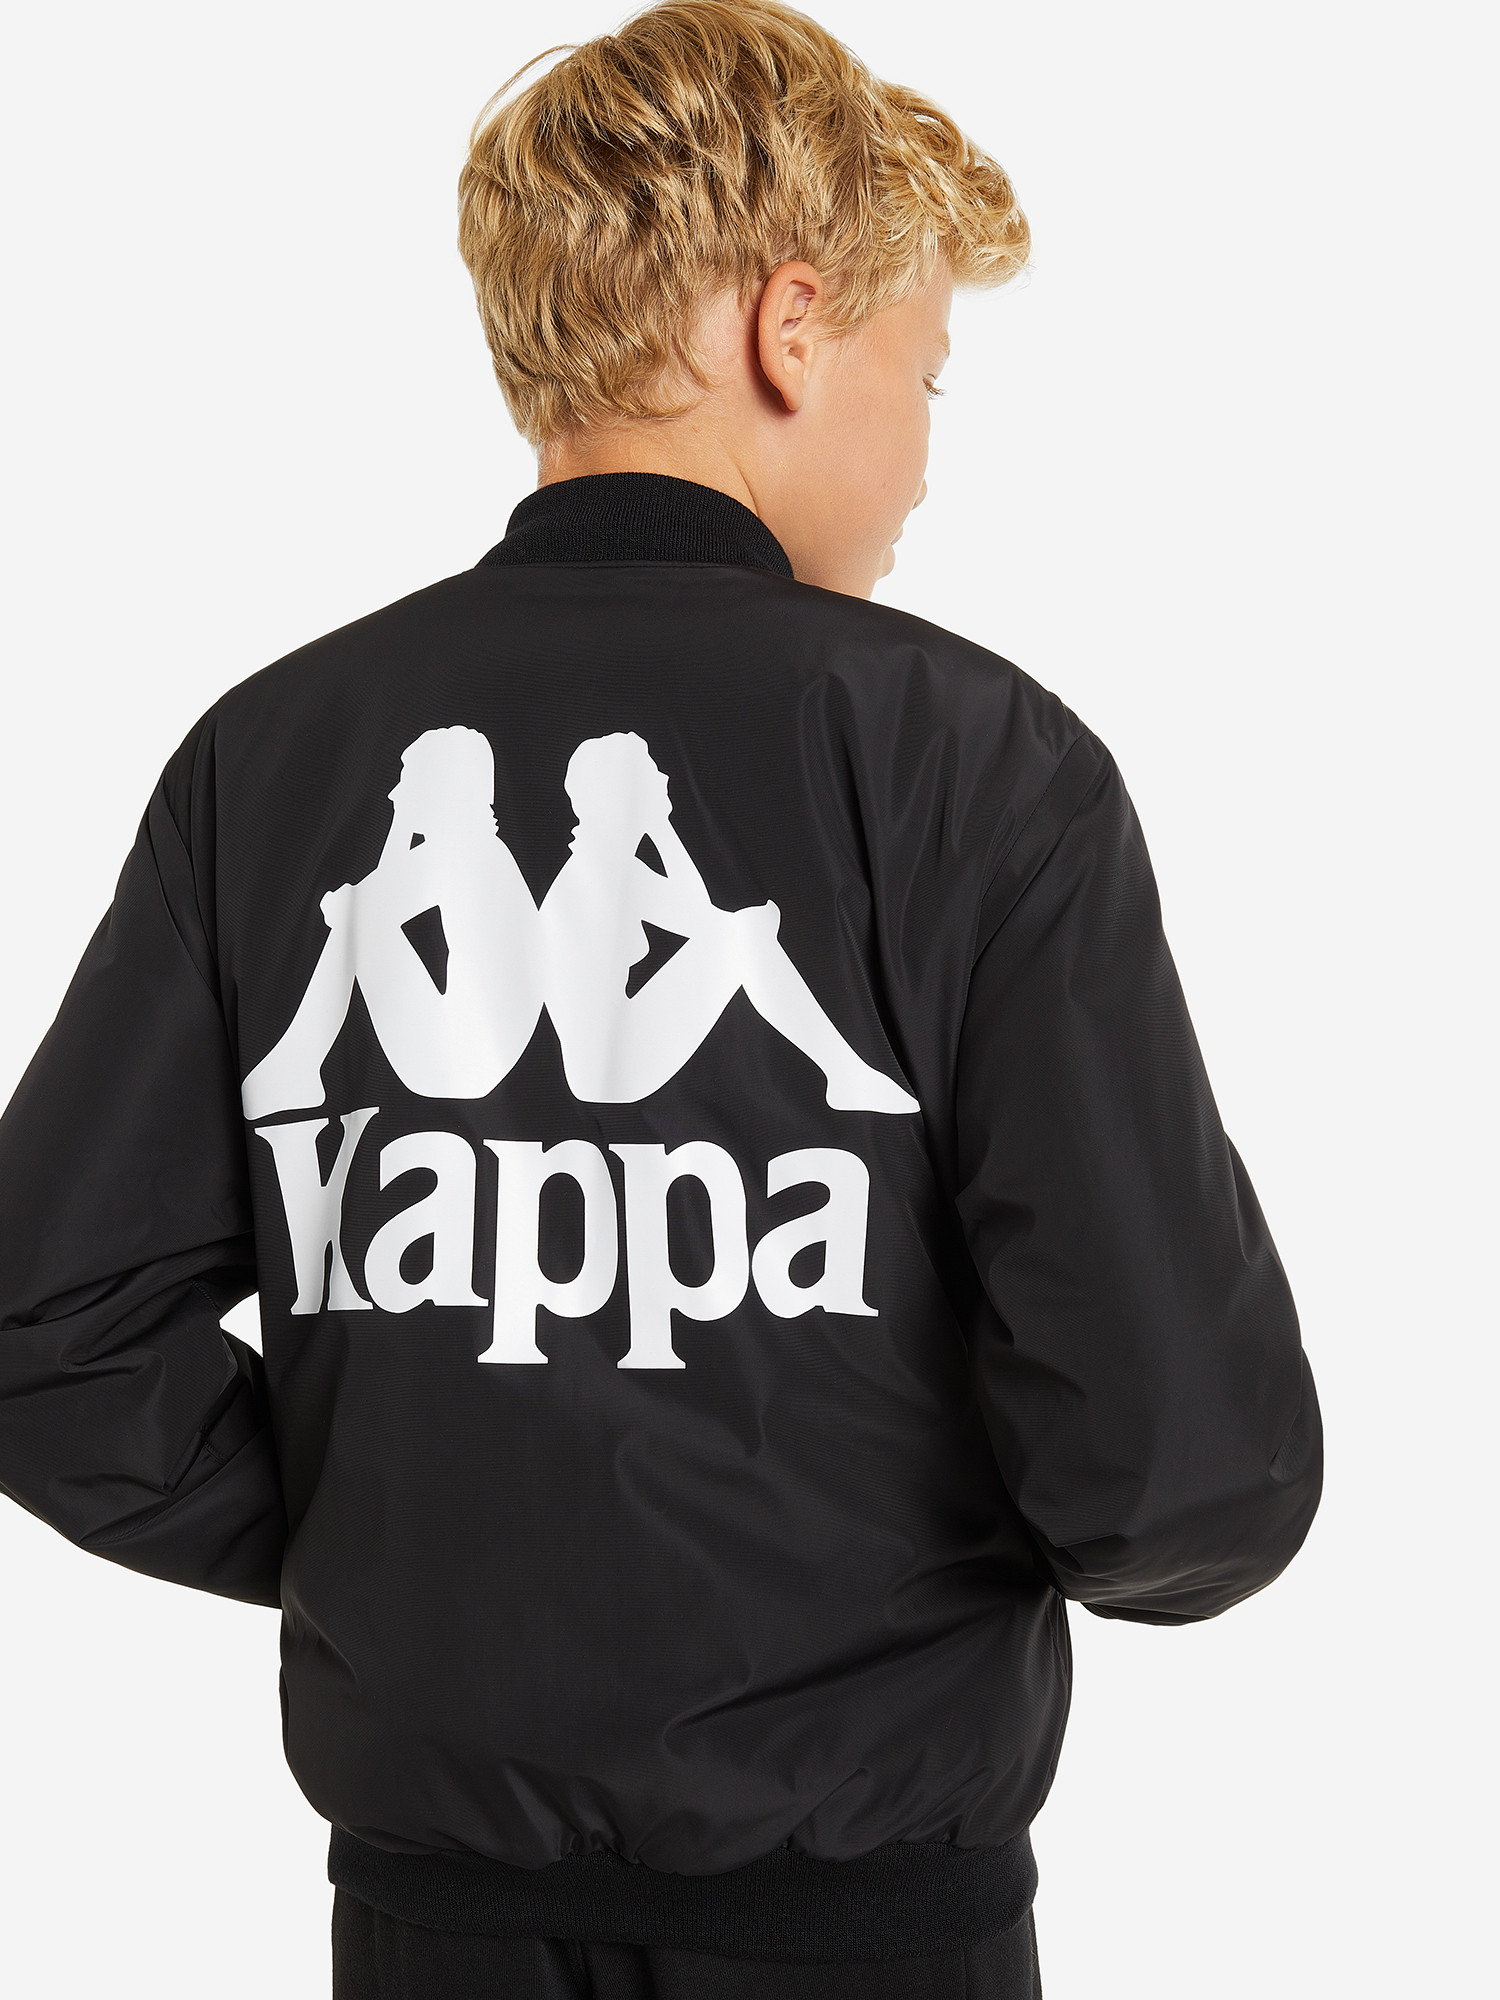 Куртка утепленная для мальчиков Kappa